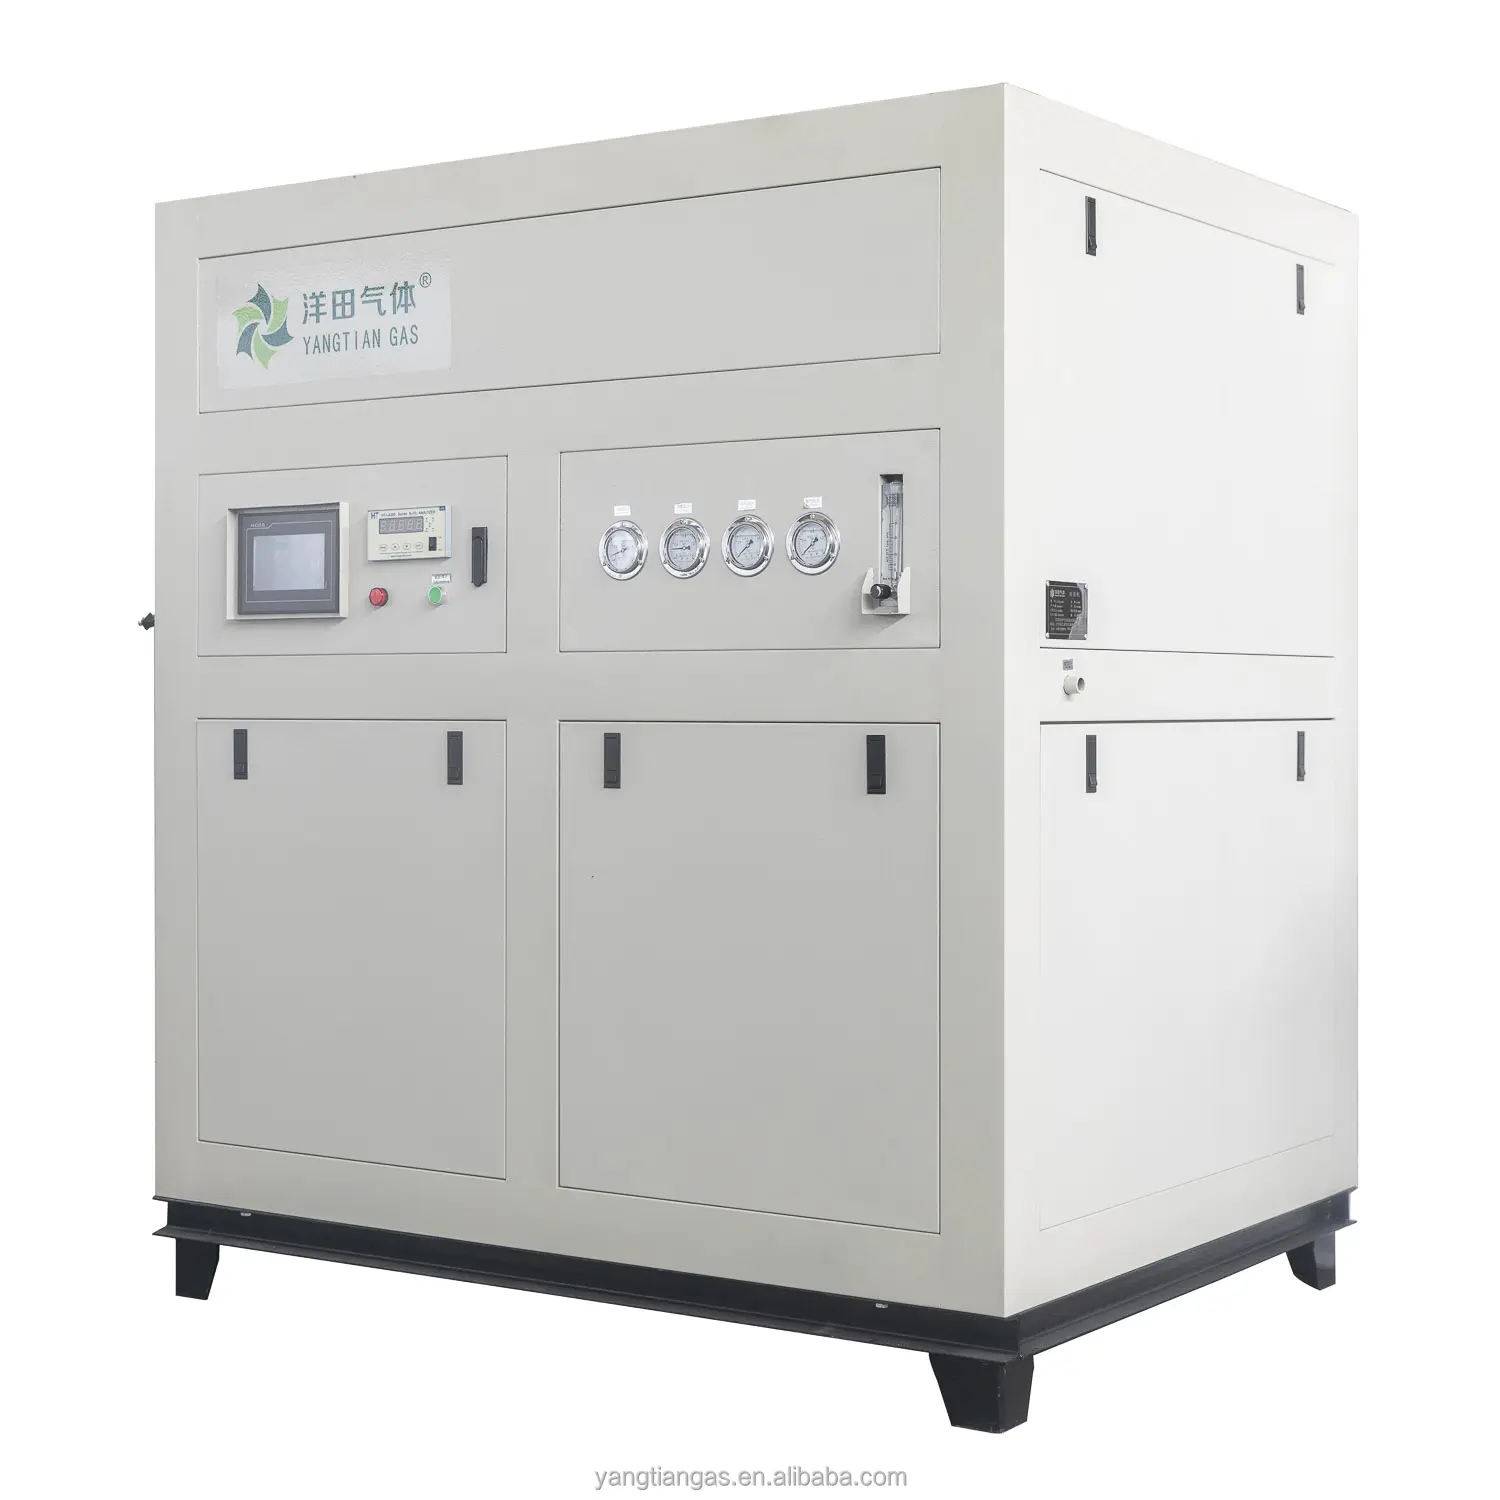 Máquina de producción de oxígeno médico e industrial Yangtian Mini oxígeno líquido